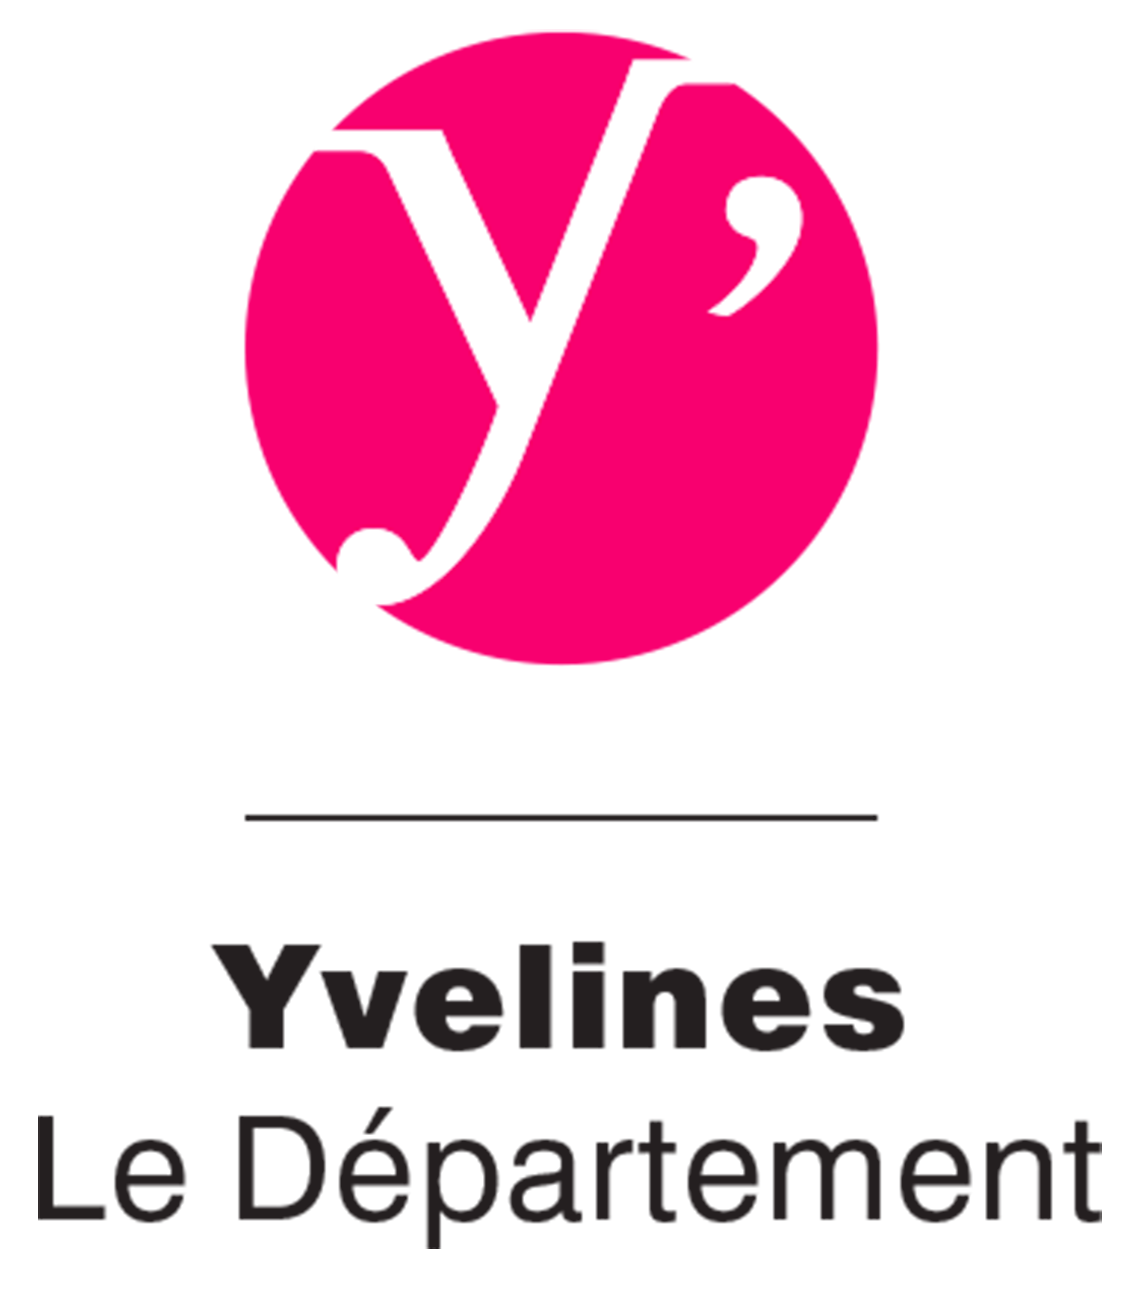 Logo Yvelines